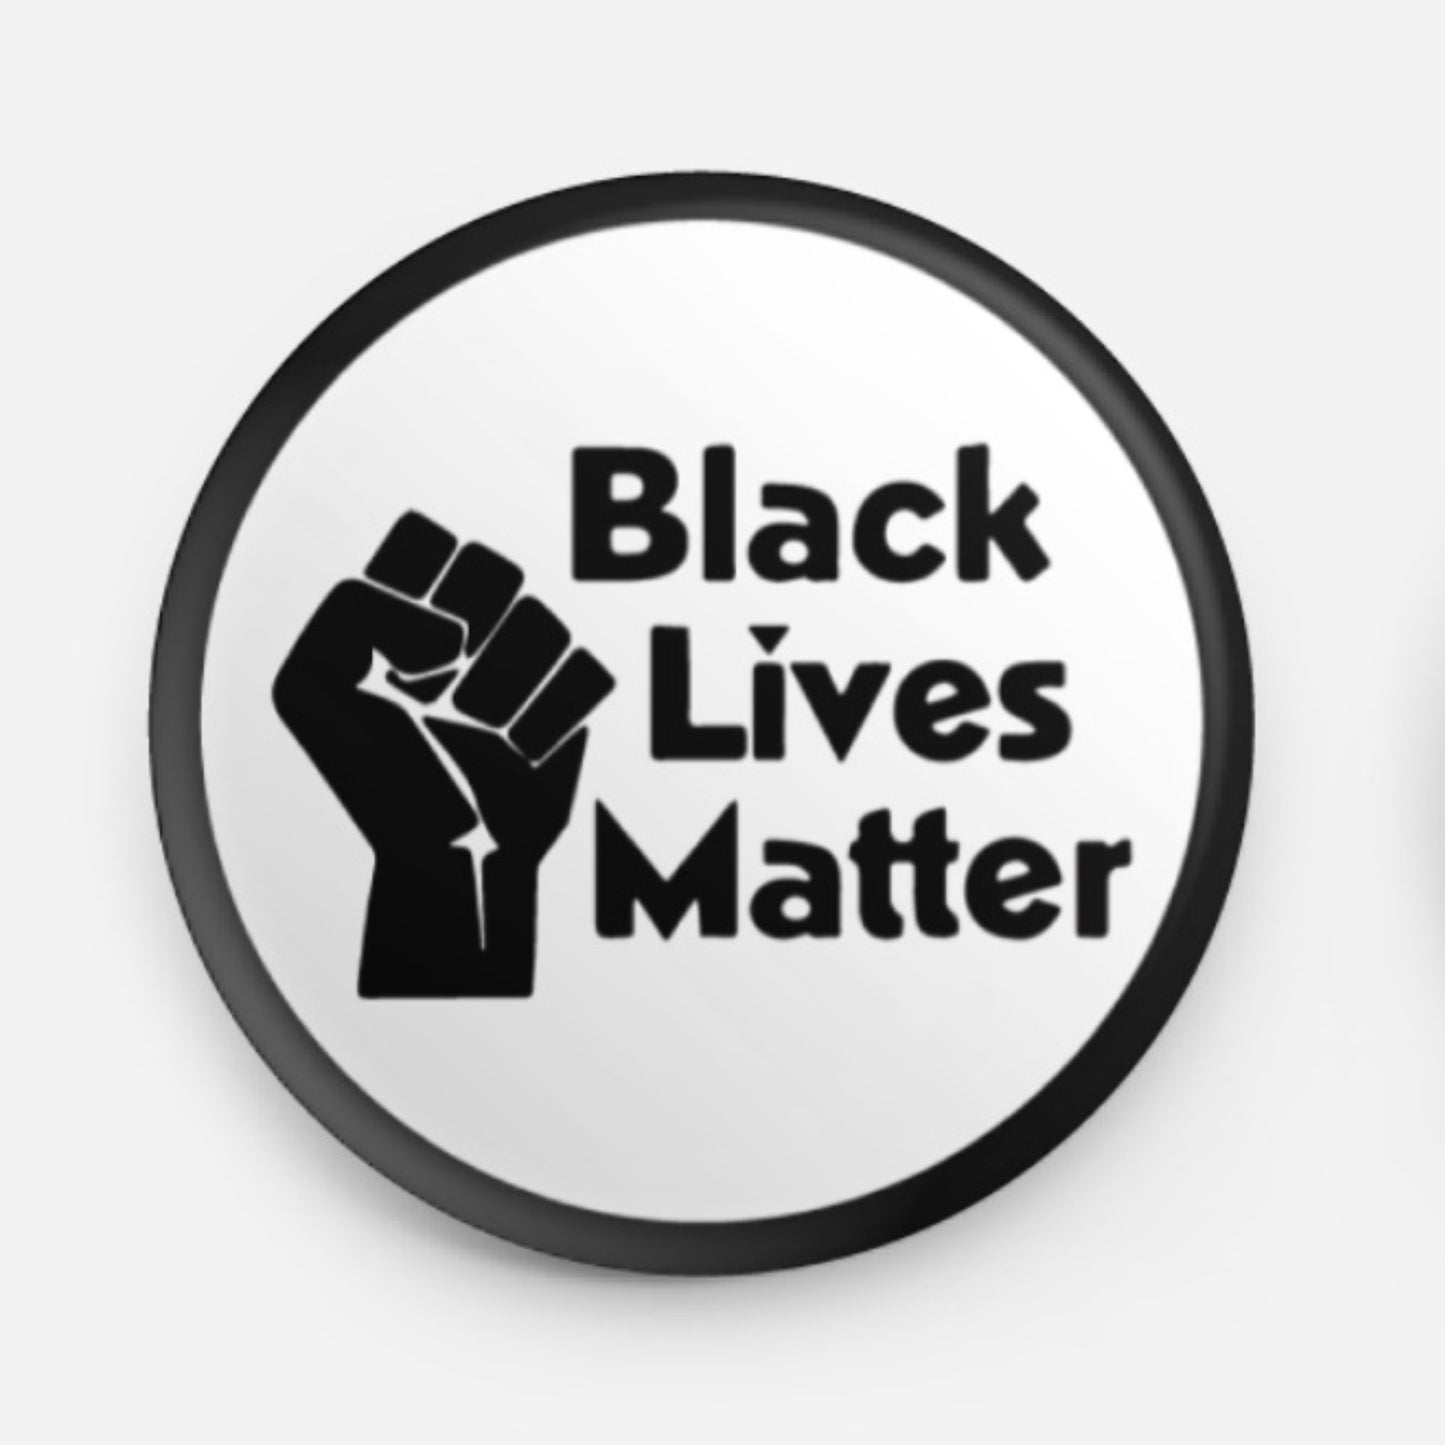 Black Lives Matter Badge